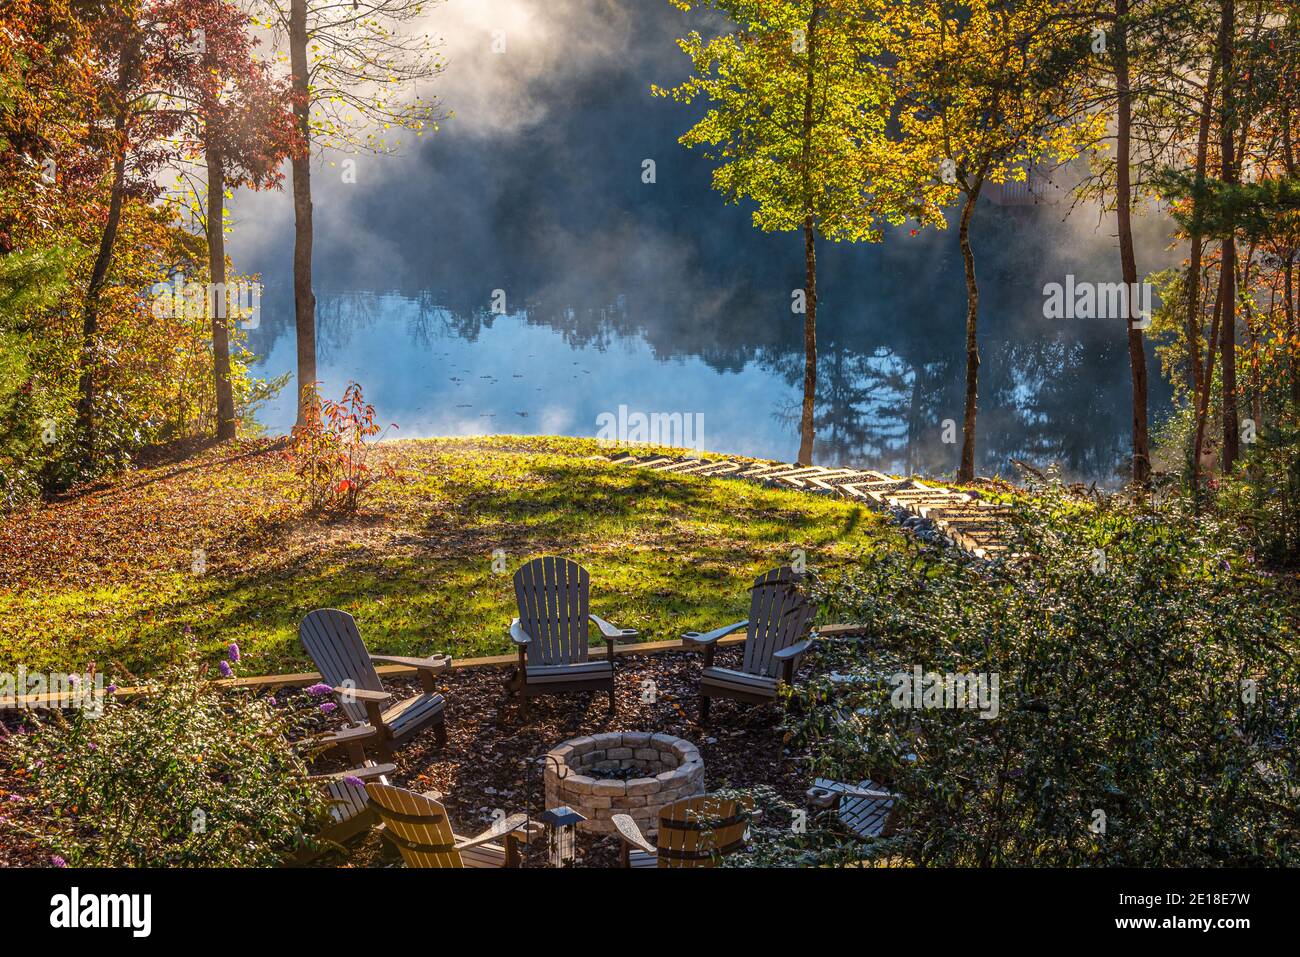 La nebbia sorge da un lago di montagna, mentre il sole che sorge illumina il fogliame autunnale che circonda un'elegante capanna di legno sulle montagne della Georgia settentrionale. Foto Stock